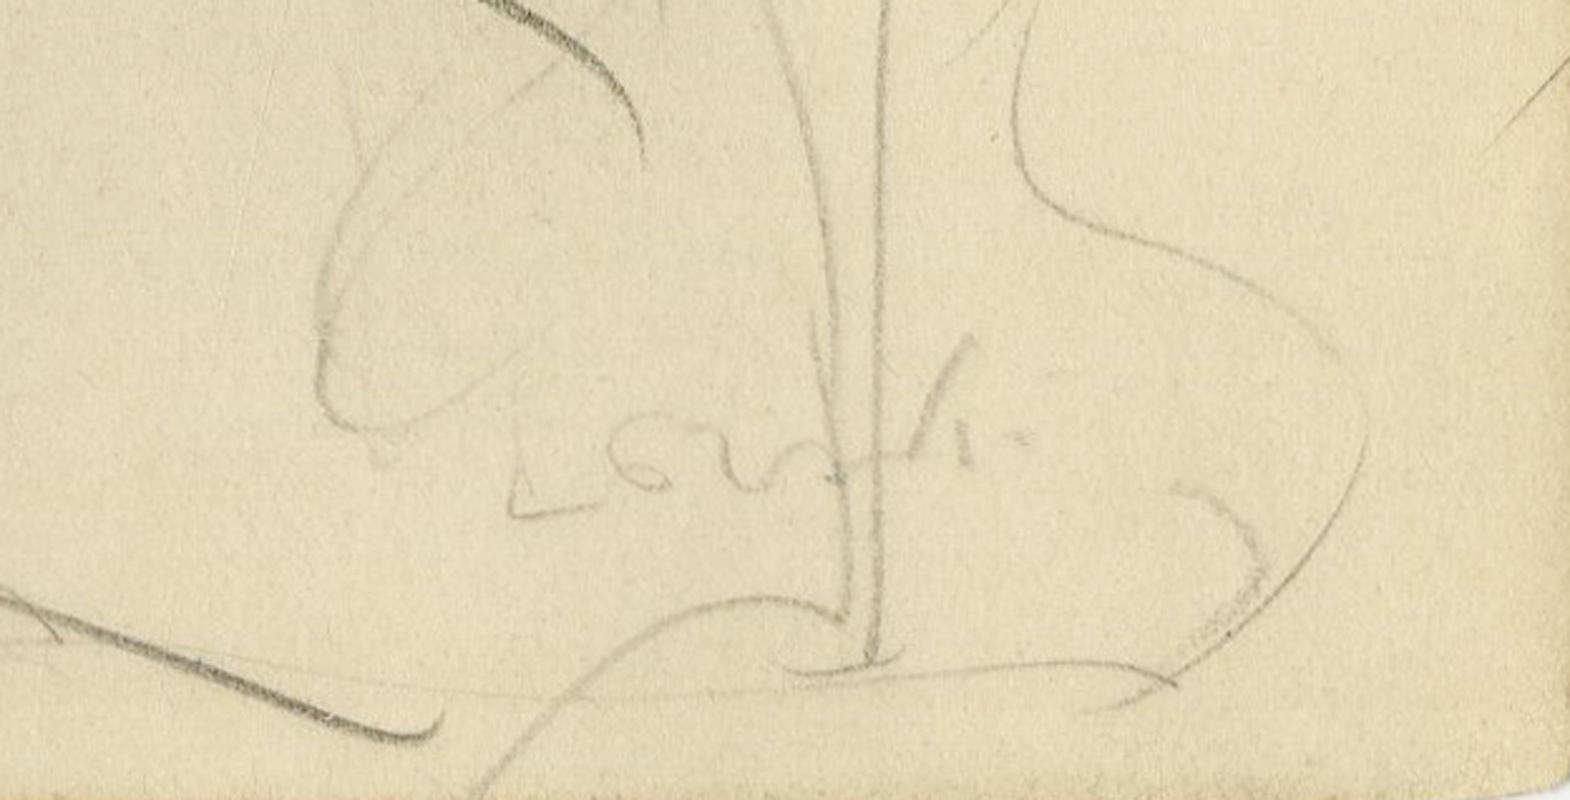 Ohne Titel (Stehender weiblicher Akt)
Graphit auf Papier, um 1930
Signiert unten rechts: Lorski (siehe Foto)
Blattgröße: 9 5/16 x 5 13/16 Zoll
Aus einem Skizzenbuch, das der Künstler während seines Aufenthalts in Paris anfertigte
Zustand: Gut
Dünne